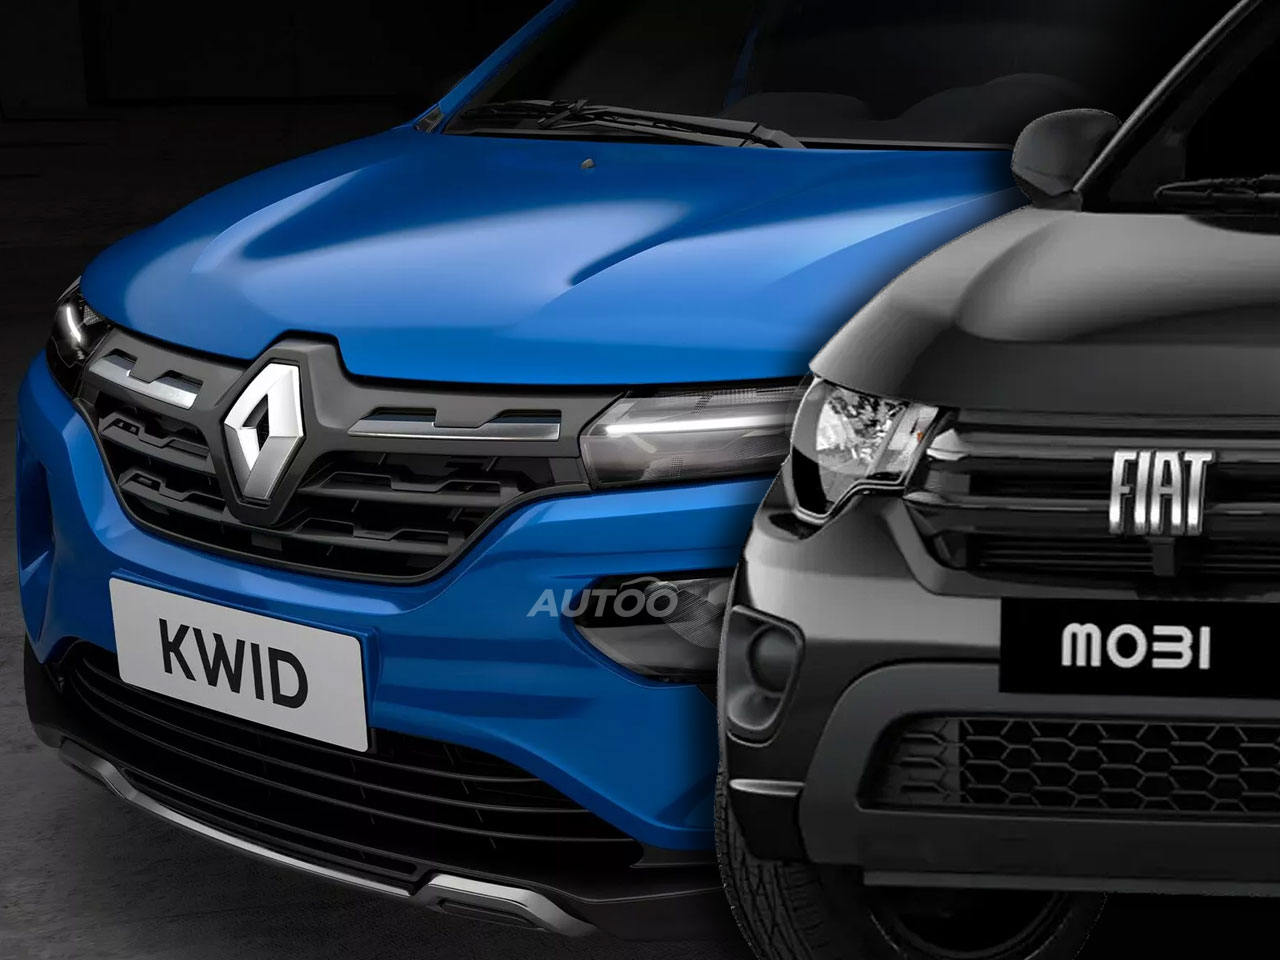 Sai da frente, Mobi: Renault vai oferecer o Kwid apenas em vendas diretas com descontos de at R$ 7.200